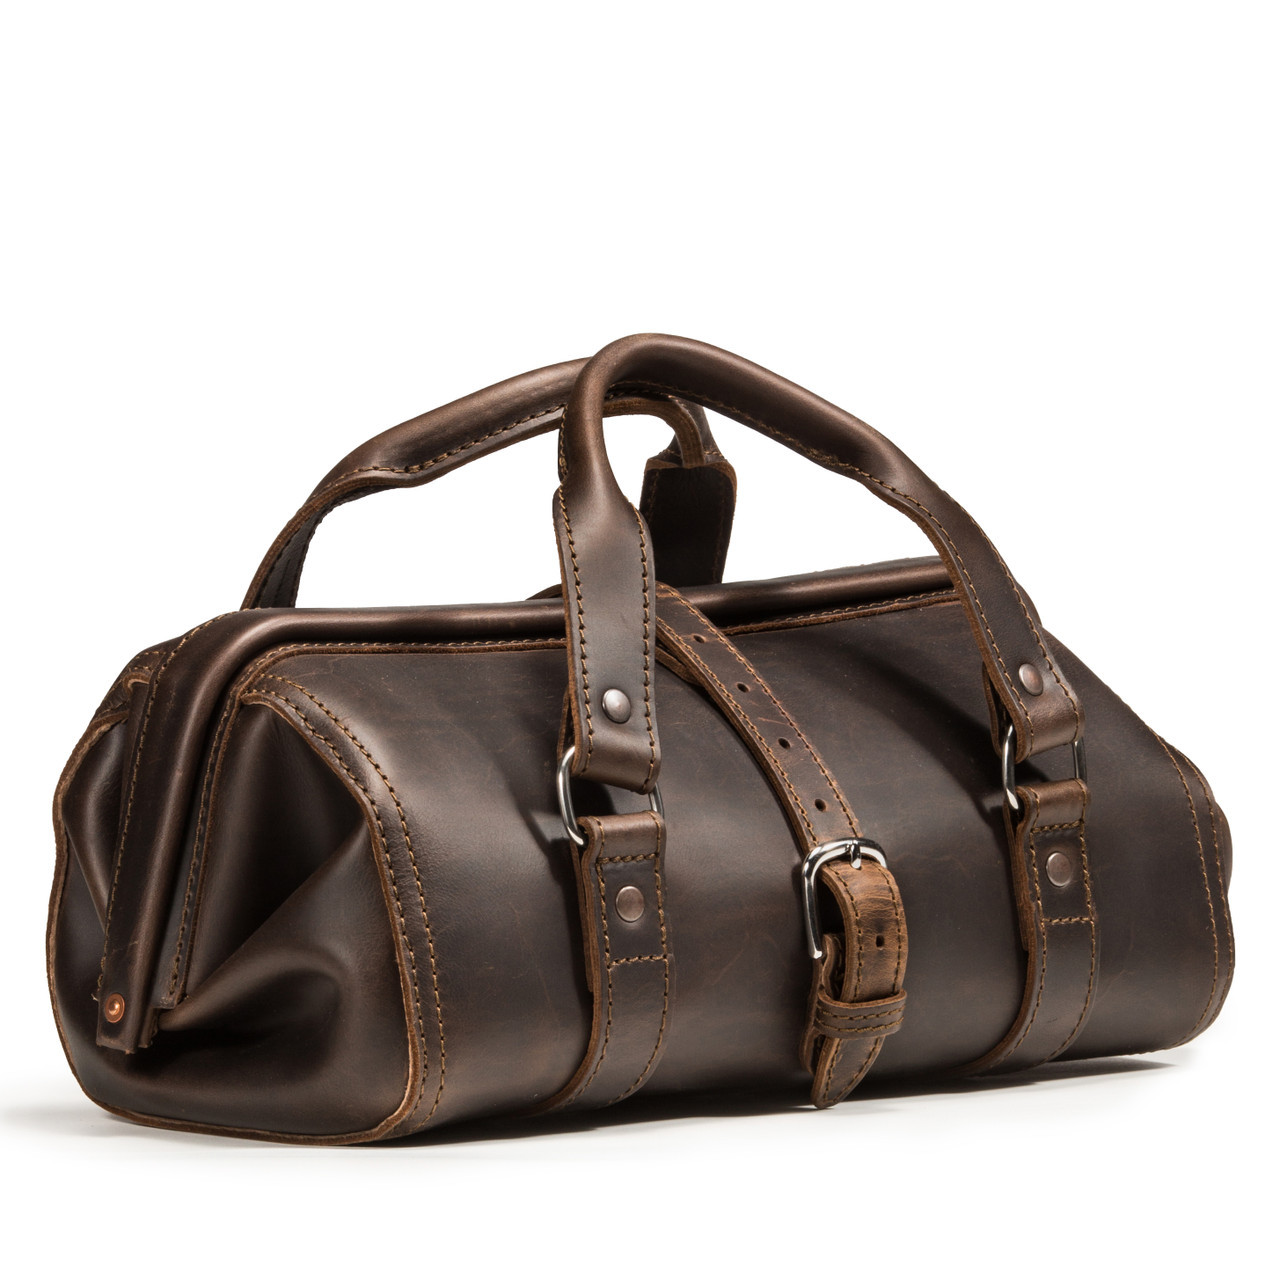 my first coach bag (: : r/handbags